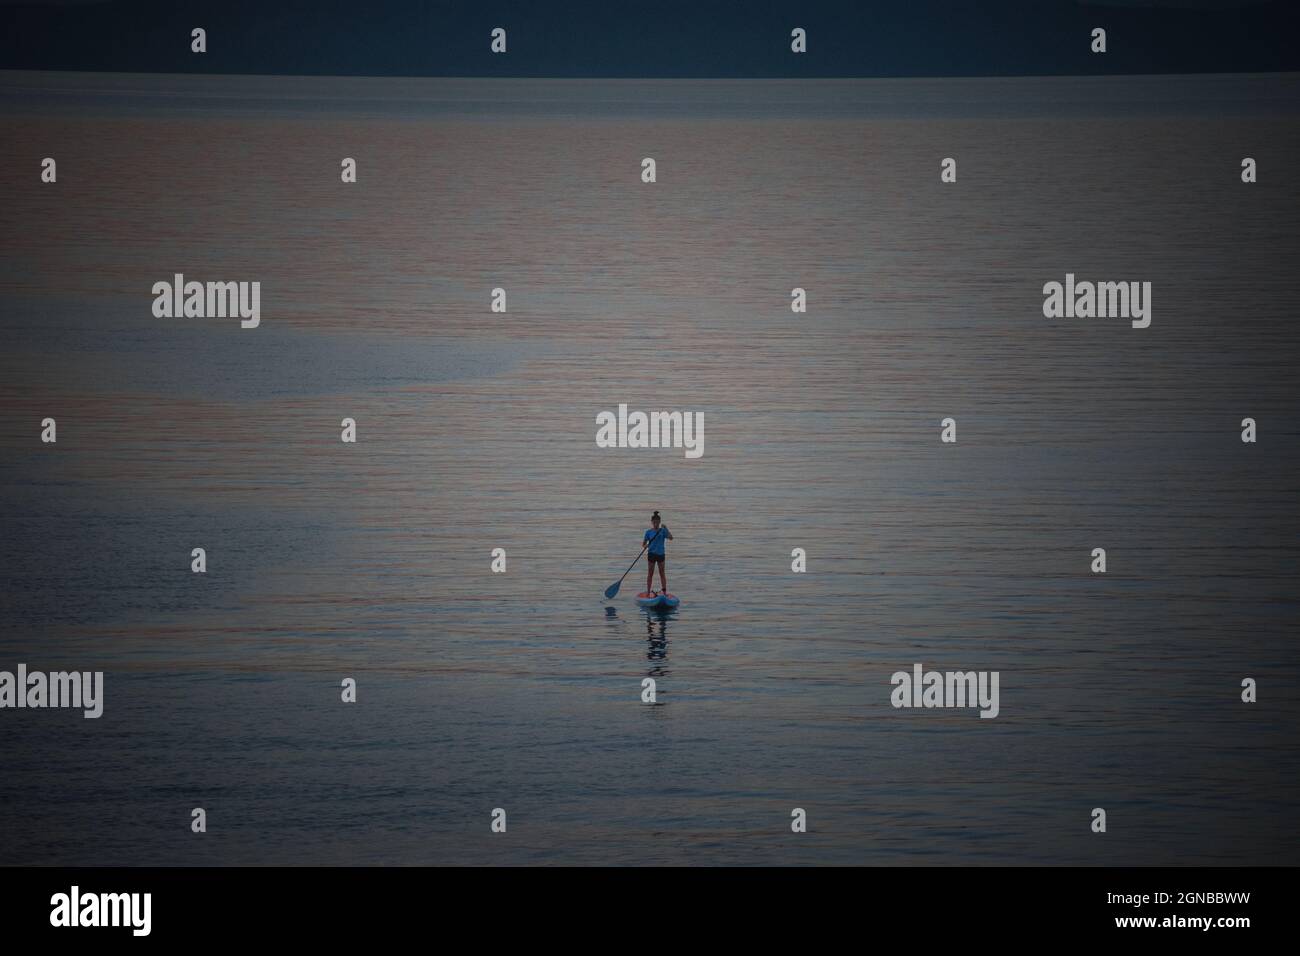 La personne se tient debout paddlimg sur un lac au soleil du soir Banque D'Images